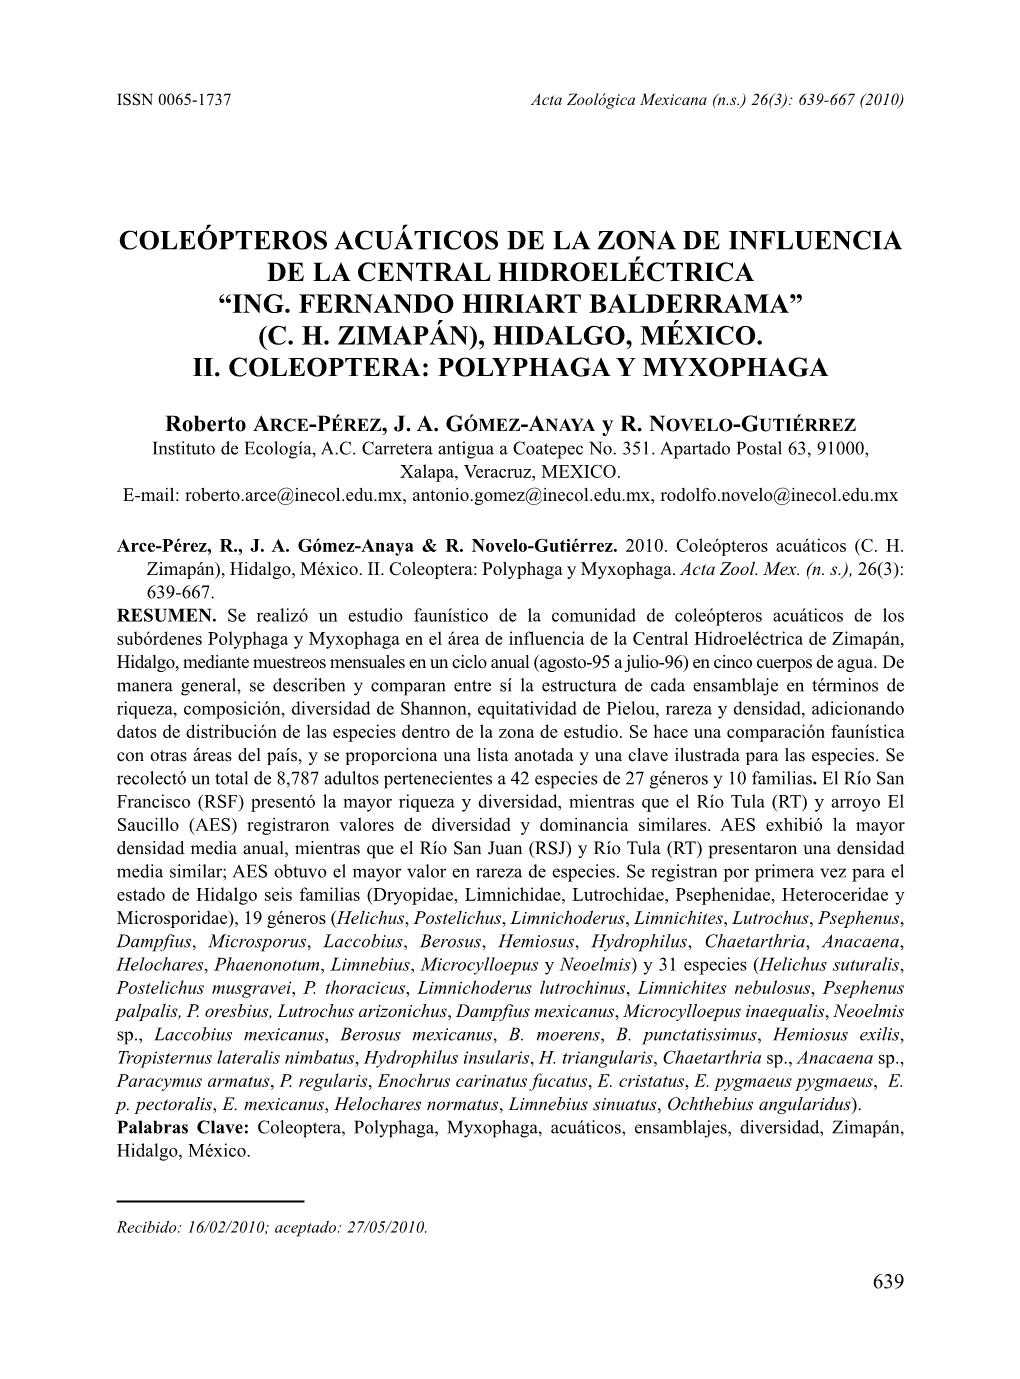 Coleópteros Acuáticos De La Zona De Influencia De La Central Hidroeléctrica “Ing